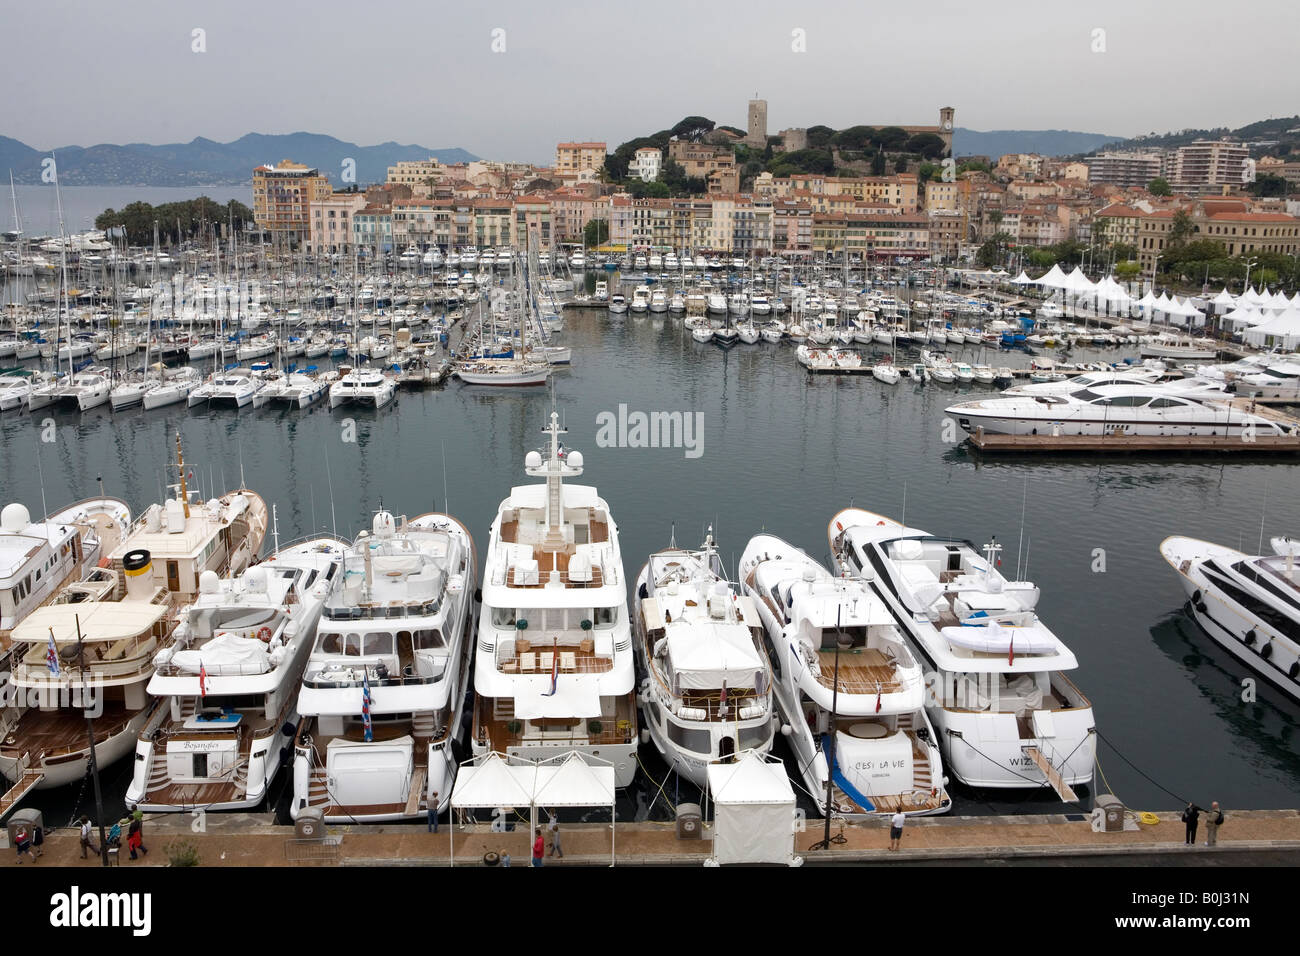 Pic da Paolo Grover Pic mostra il vecchio porto di Cannes sulla costa sud della Francia Foto Stock